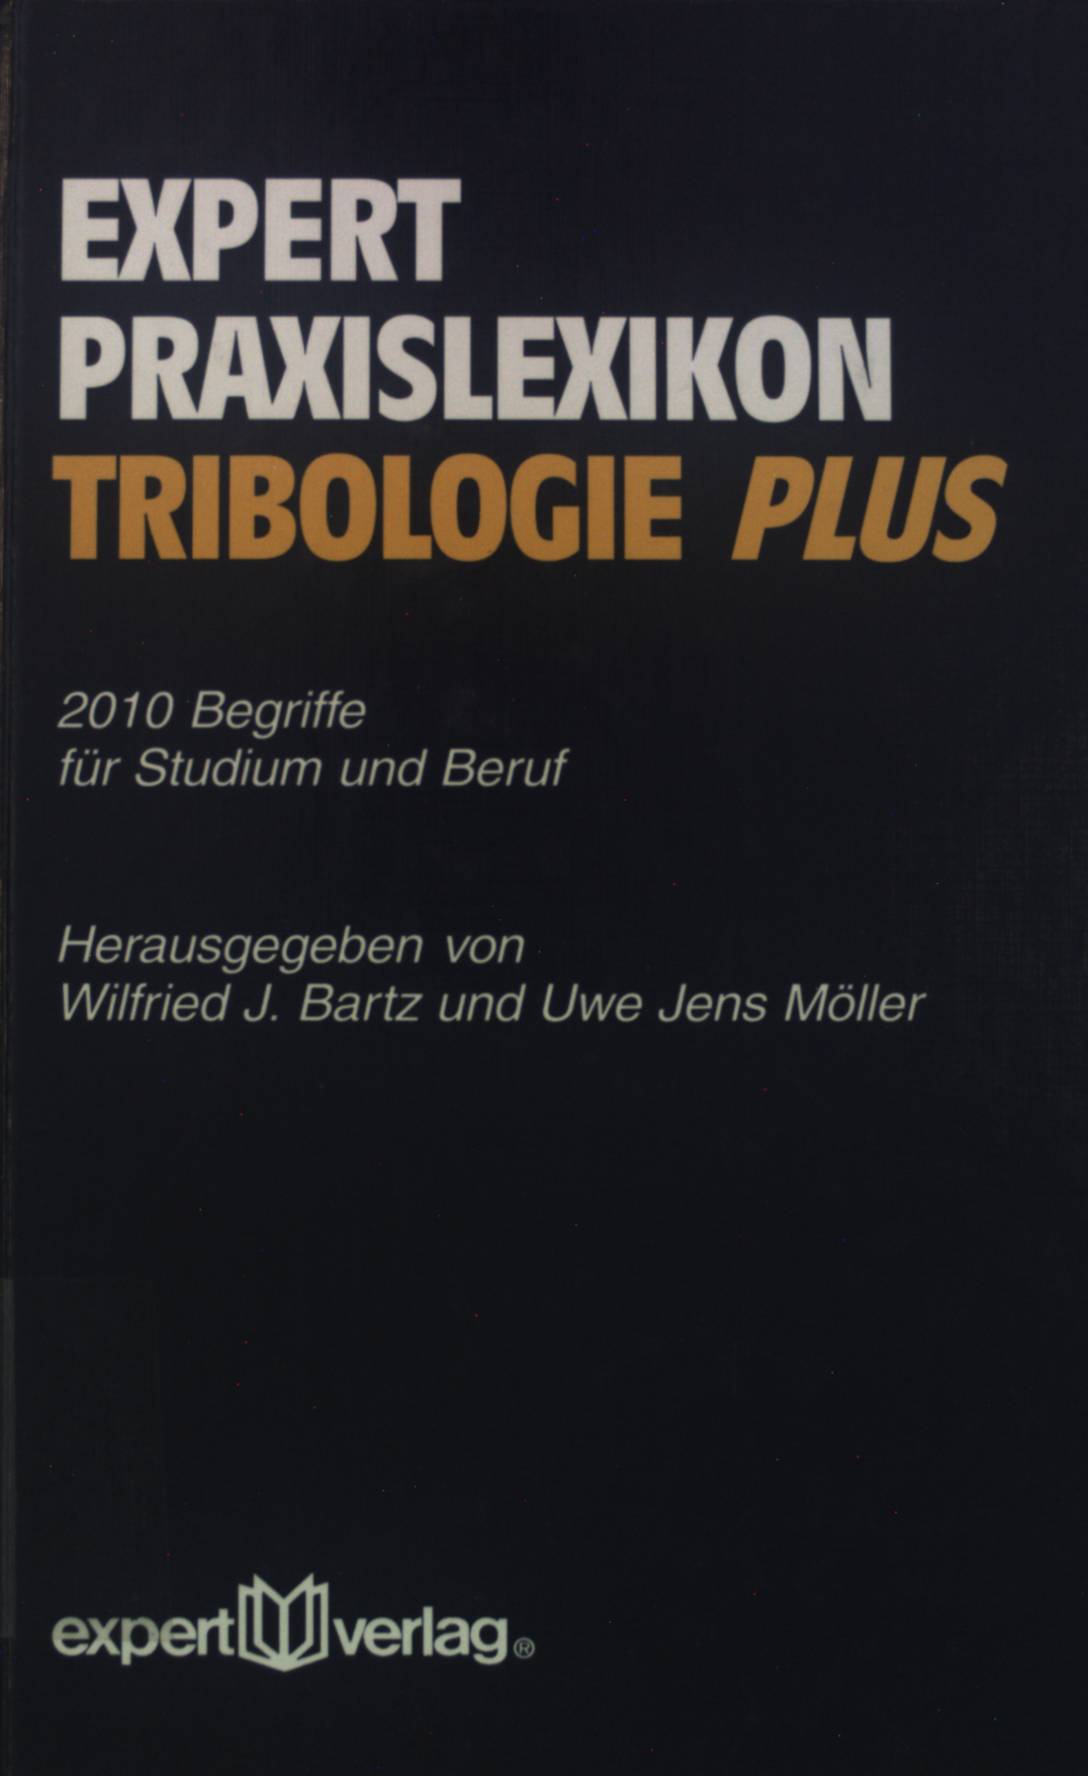 Expert Praxis-Lexikon Tribologie plus : 2010 Begriffe für Studium und Praxis. - Bartz, Wilfried J. und Uwe Jens Möller